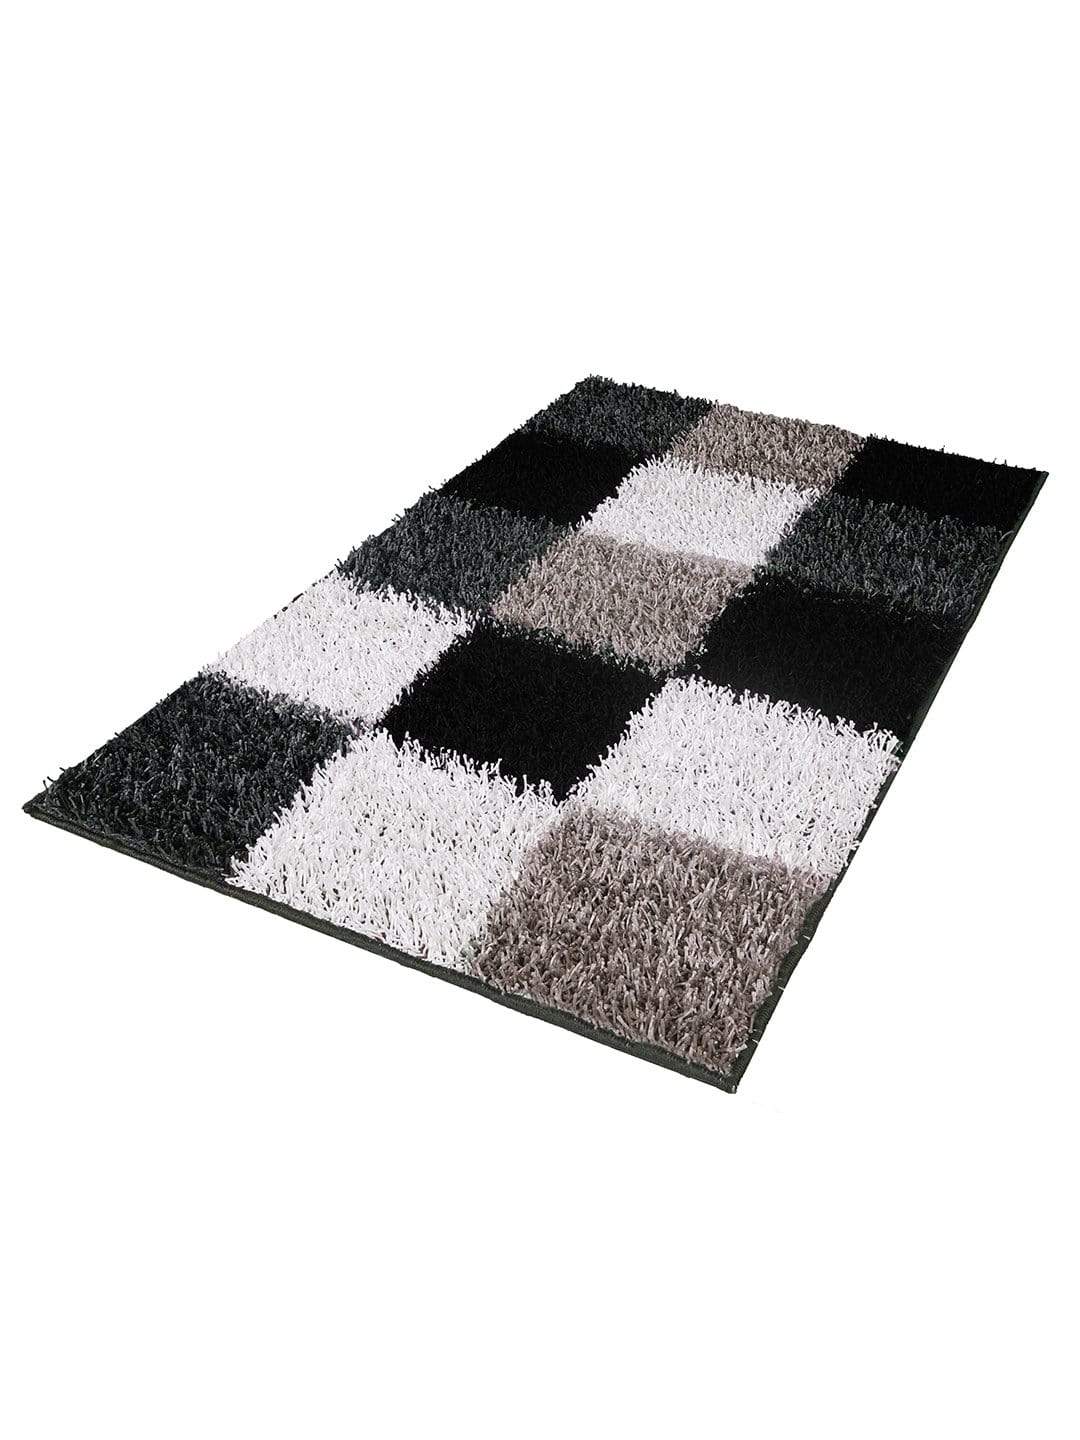 Checkered Pattern Black & White Carpet for Living Room